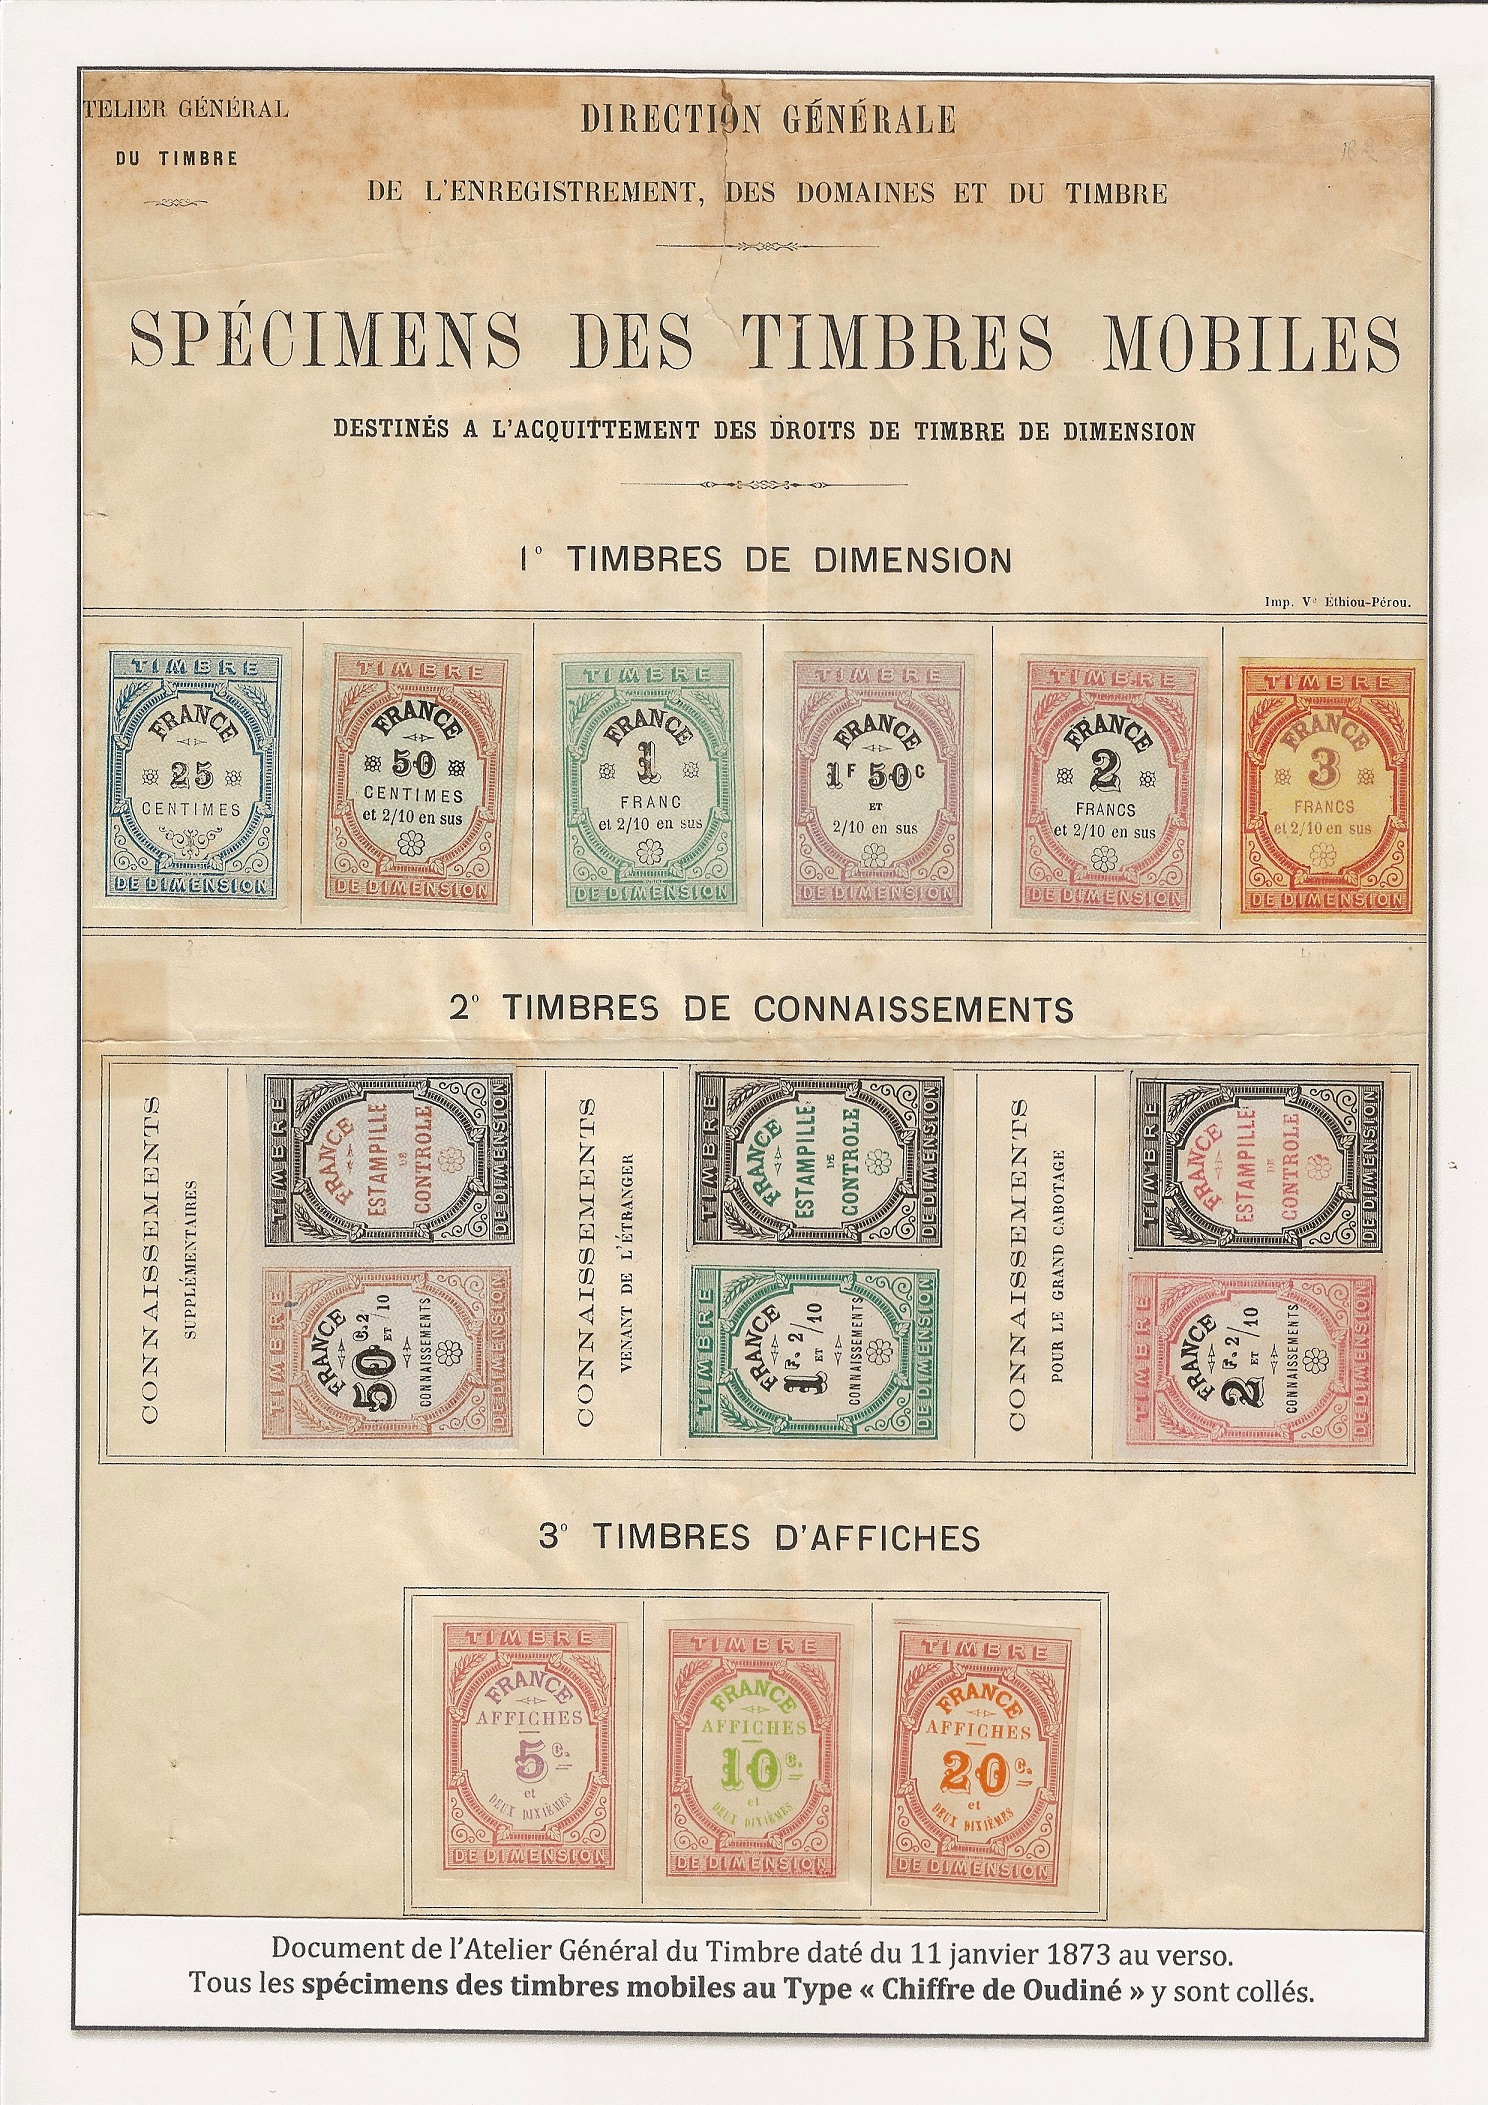 Les timbres nationaux, mobiles pour affiches p. 13